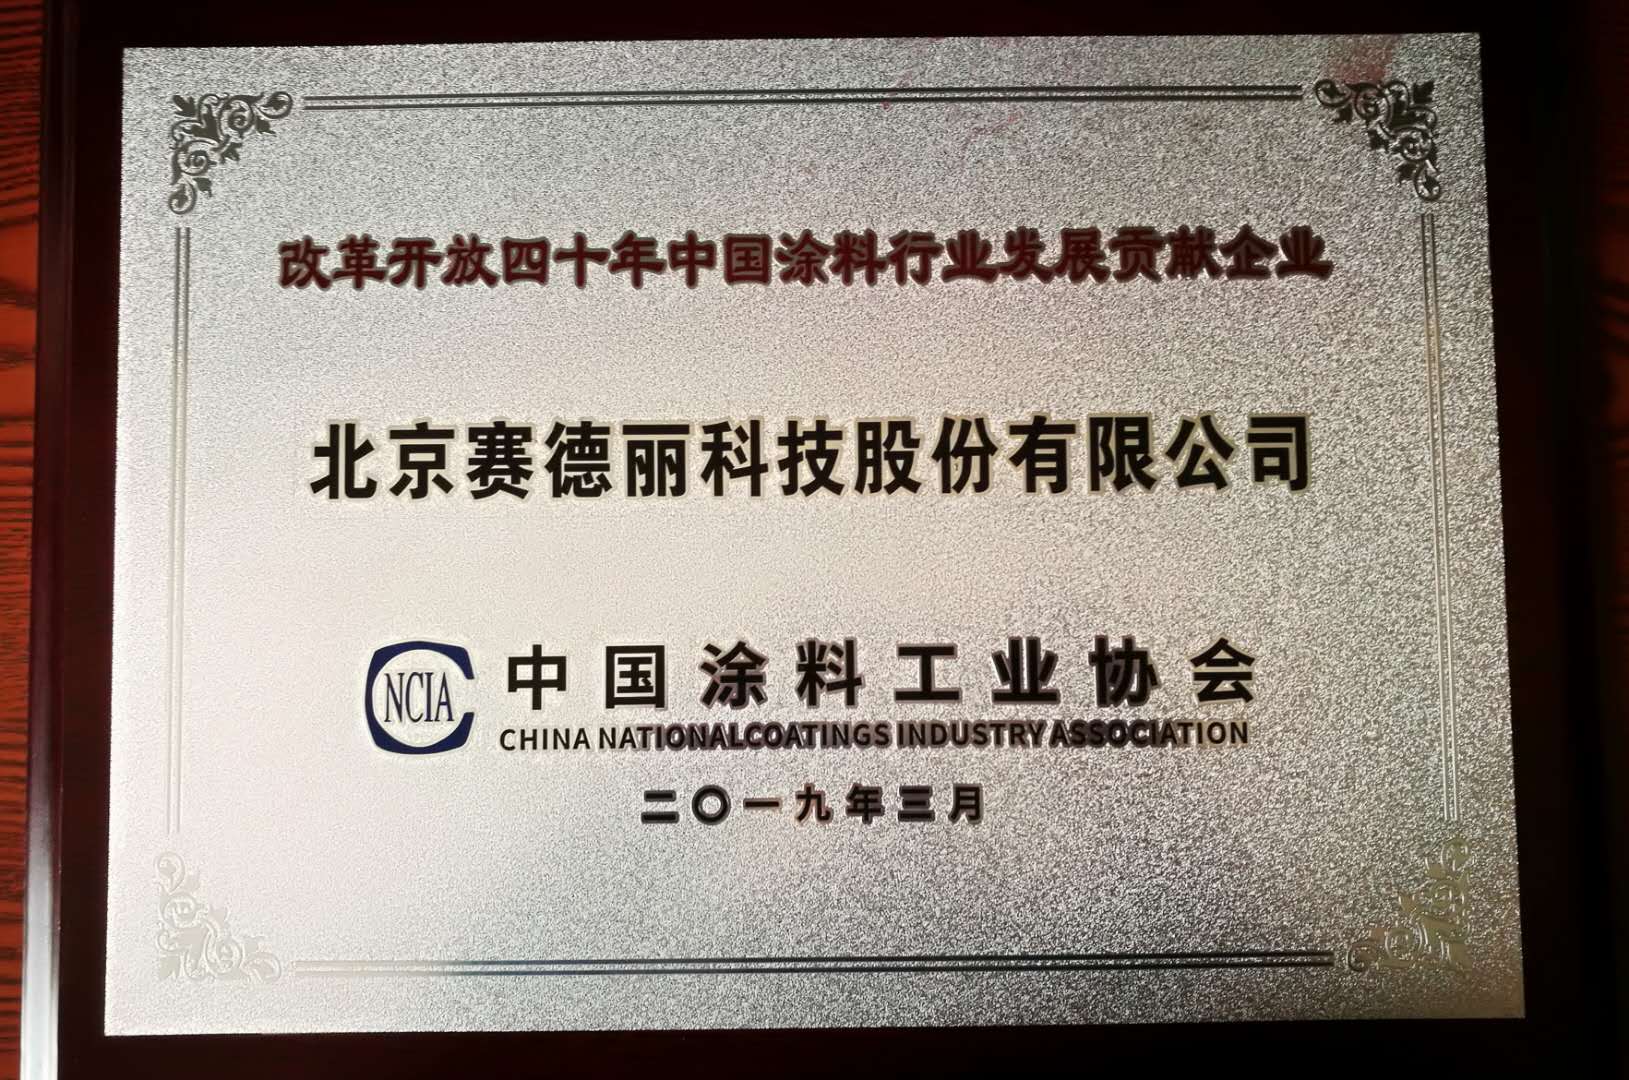 赛德丽荣获改革开放四十年中国涂料行业发展贡献奖